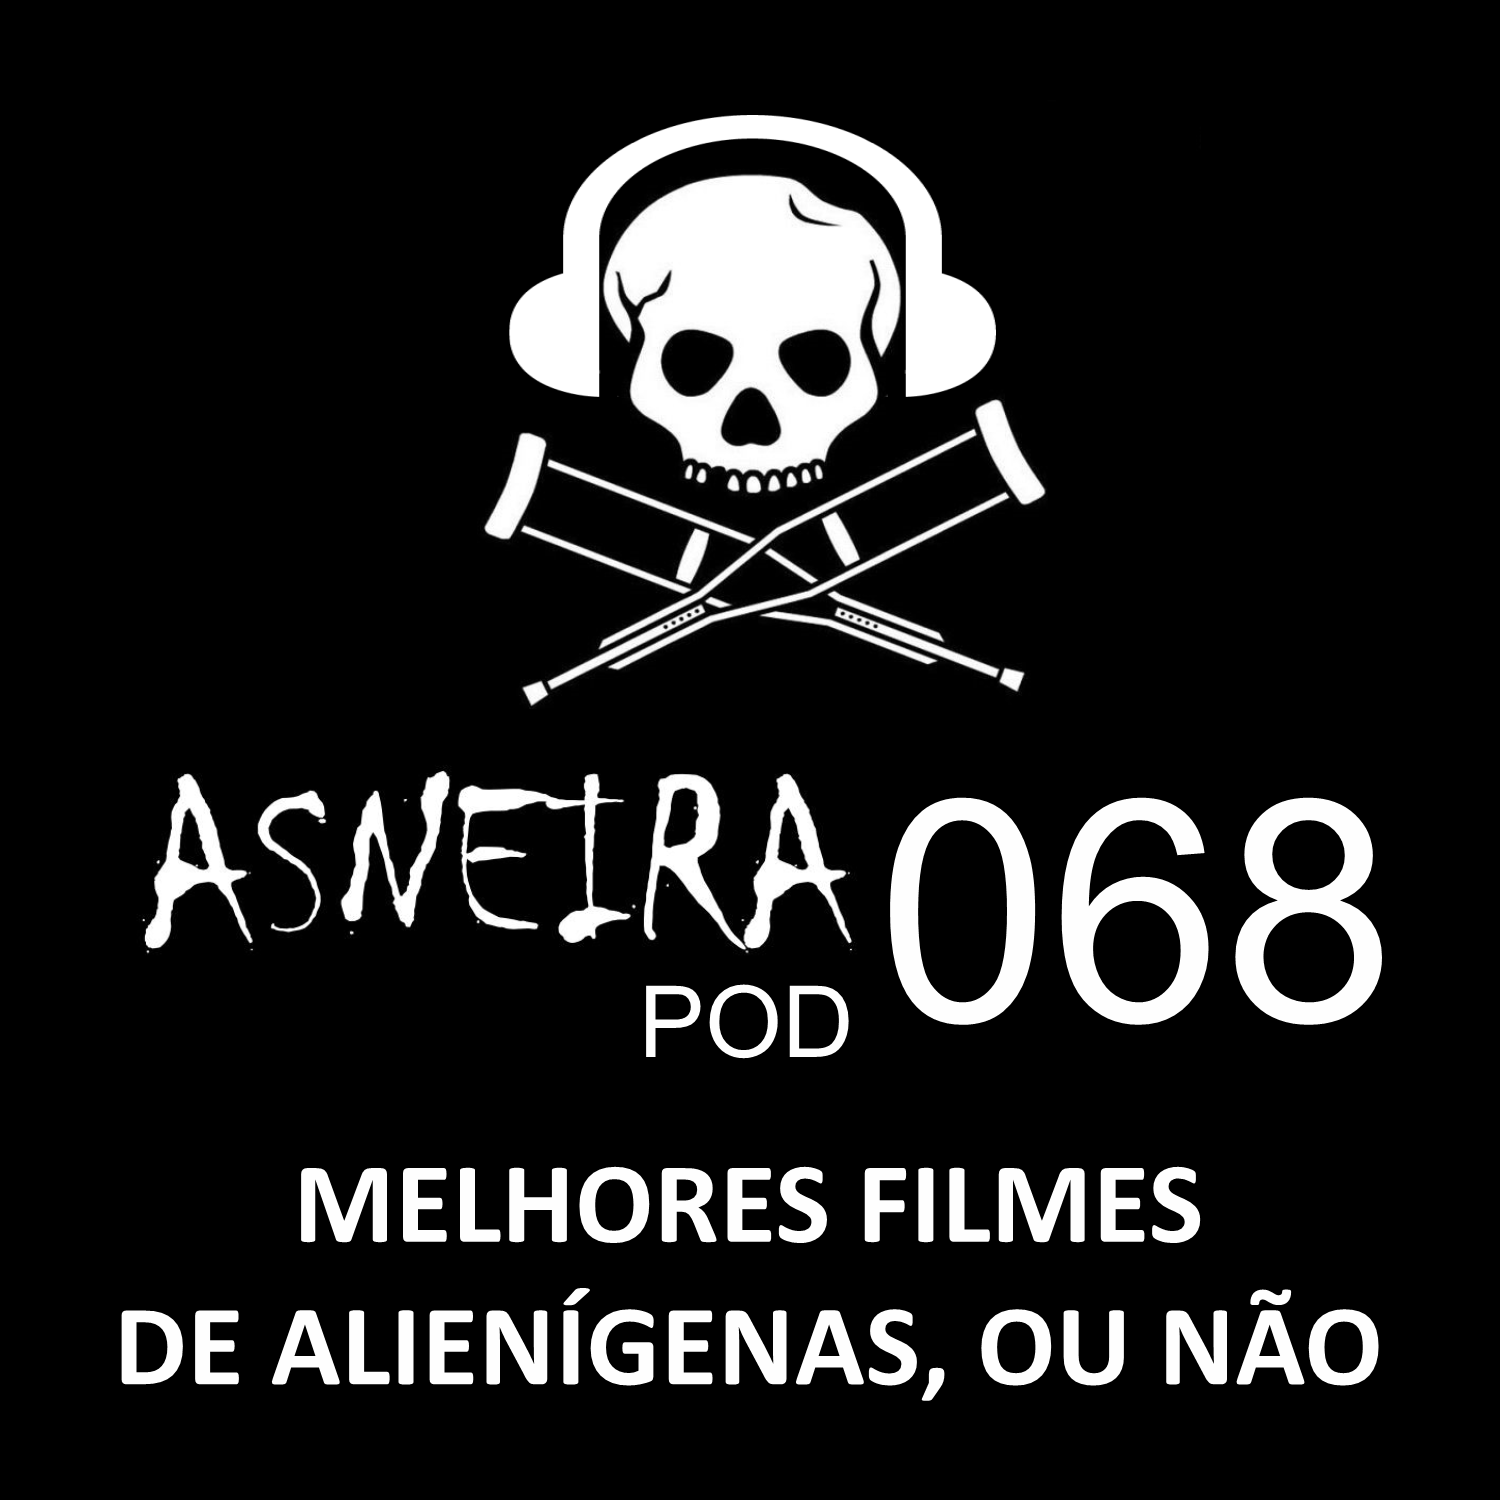 AsneiraPOD 068 – Melhores filmes de alienígenas, ou não